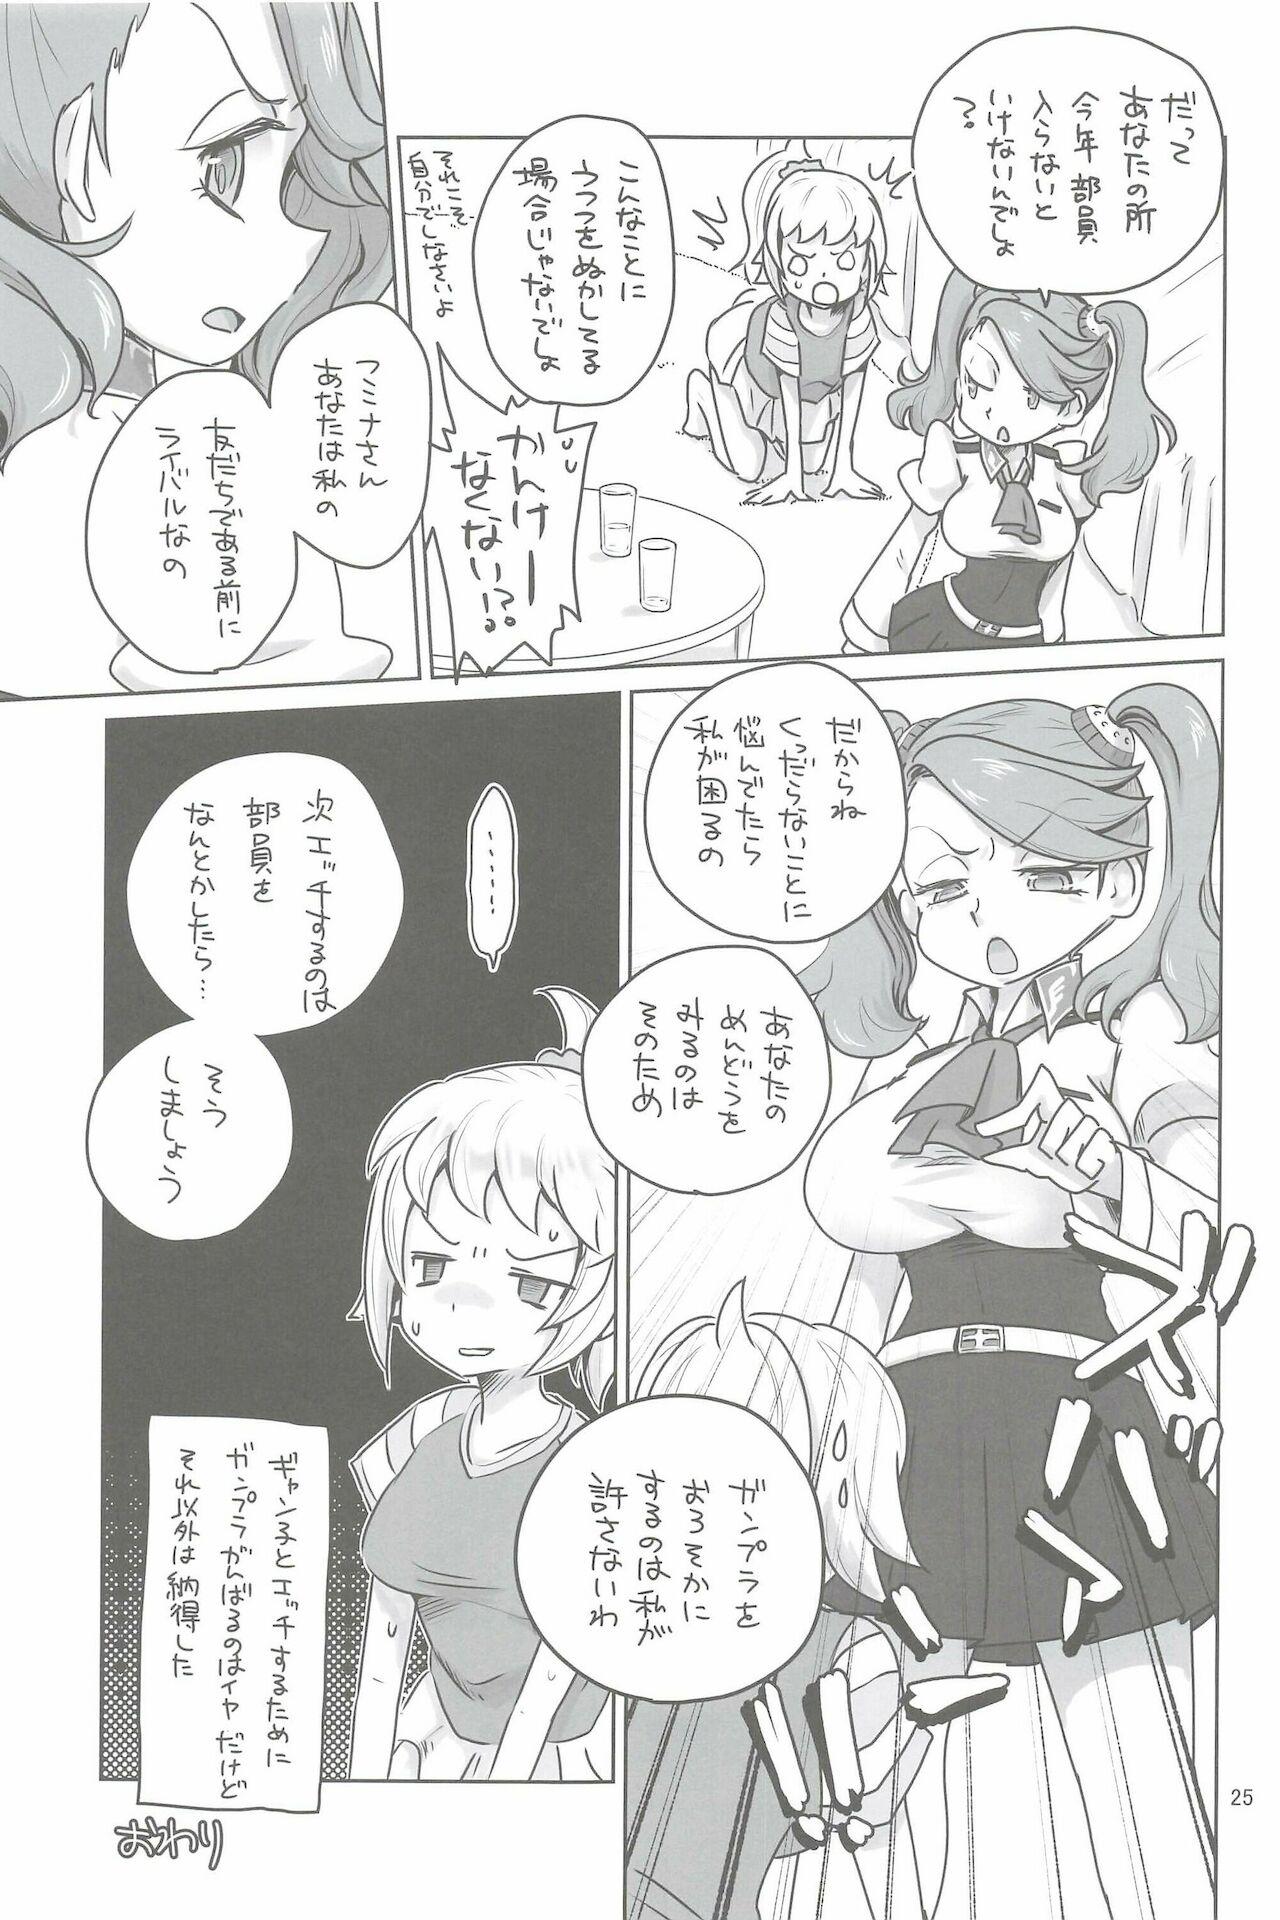 Petera Kyou Hatsutaiken wo Shite Ashita Hatsukoi wo Suru - Gundam build fighters try Gundam Massage - Page 25